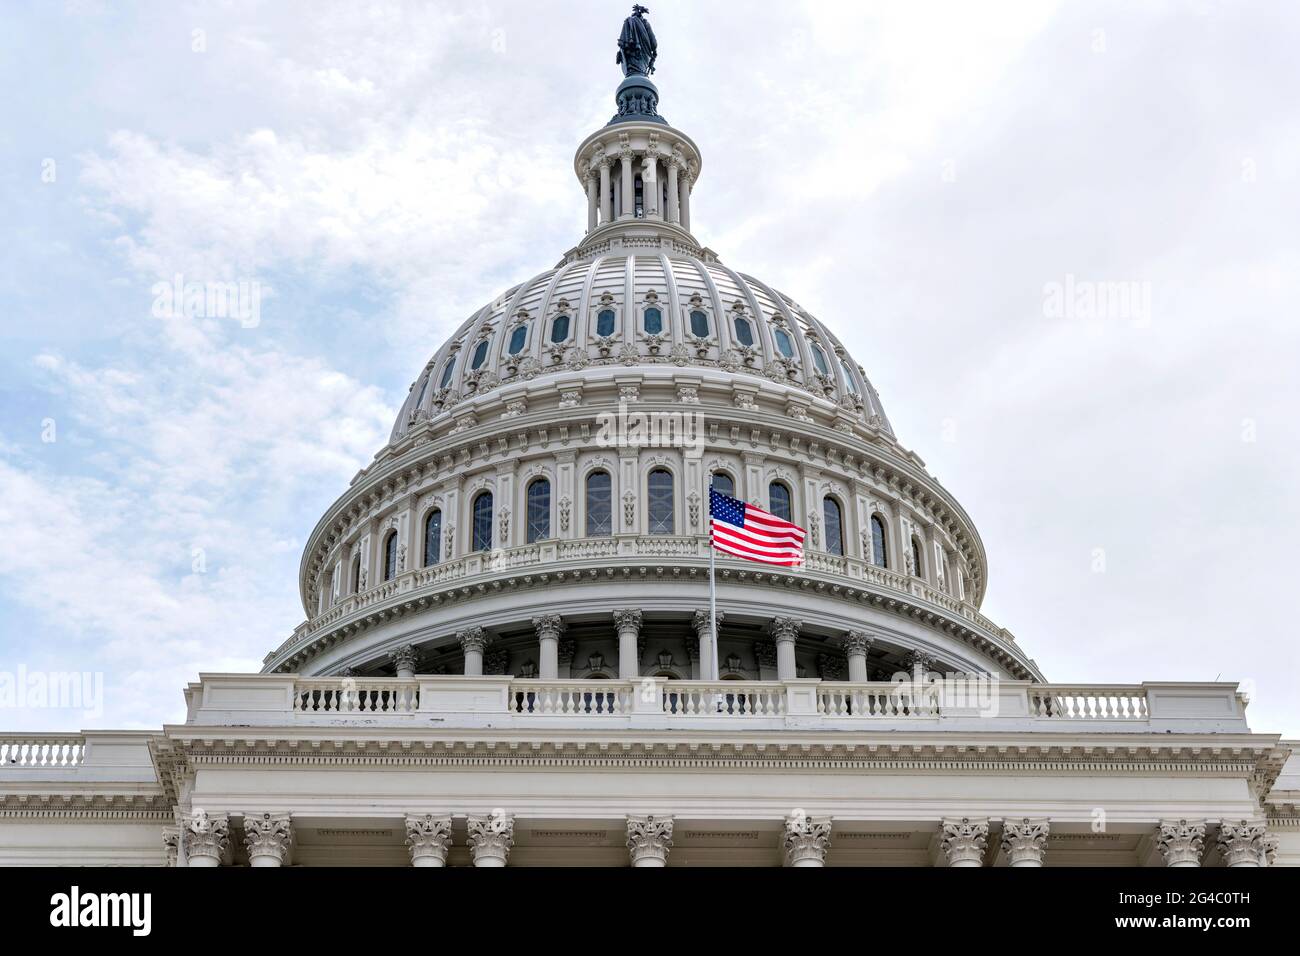 Der Dome - EINE Nahaufnahme aus dem niedrigen Winkel einer US-Nationalflagge, die vor der Kuppel des Capitol Building fliegt. Washington, D.C., USA. Stockfoto